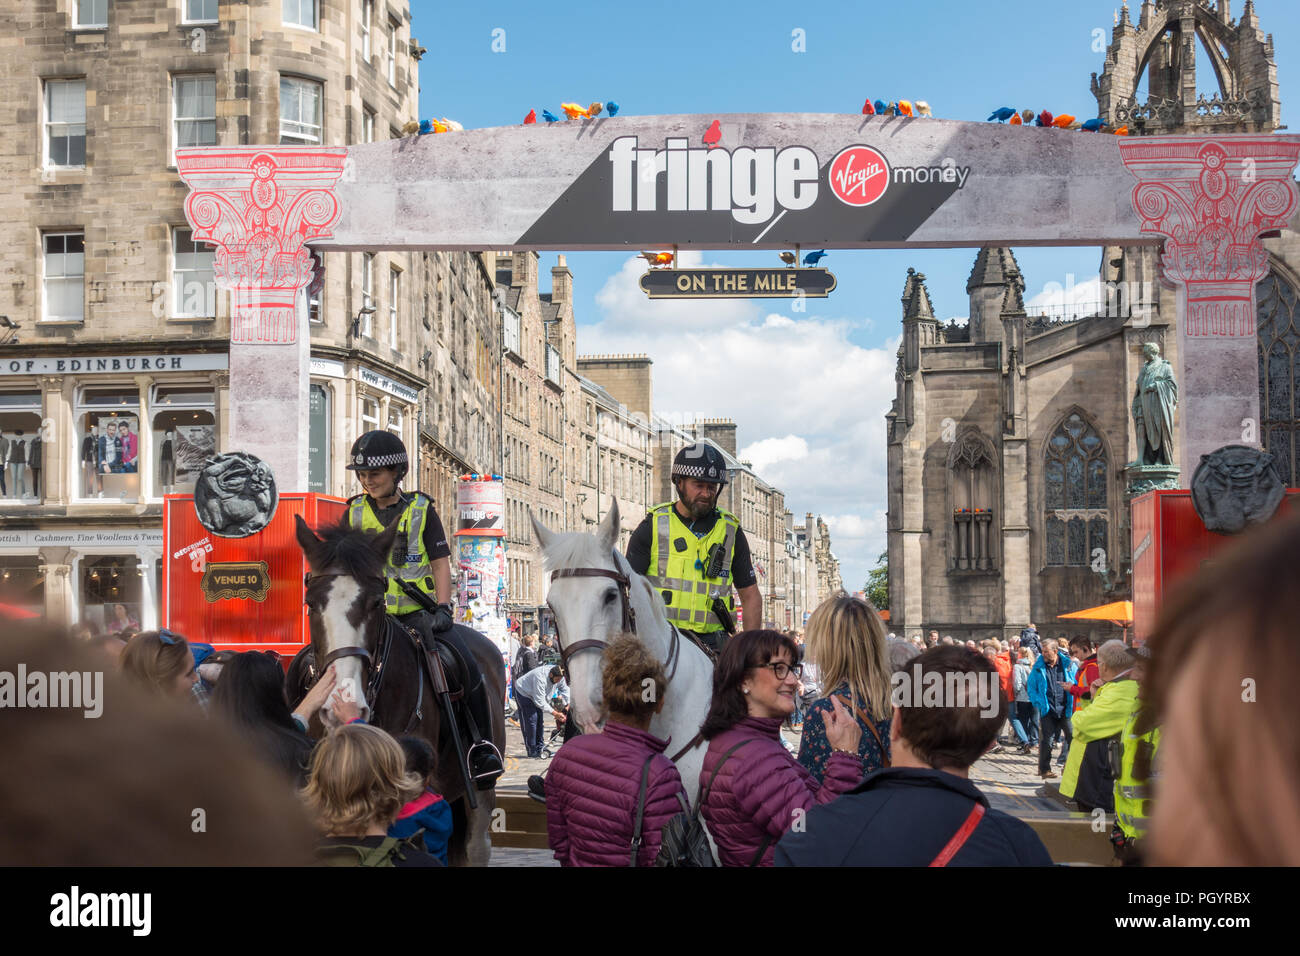 mounted police officers at the Edinburgh Fringe, Royal Mile, Edinburgh, Scotland, UK Stock Photo